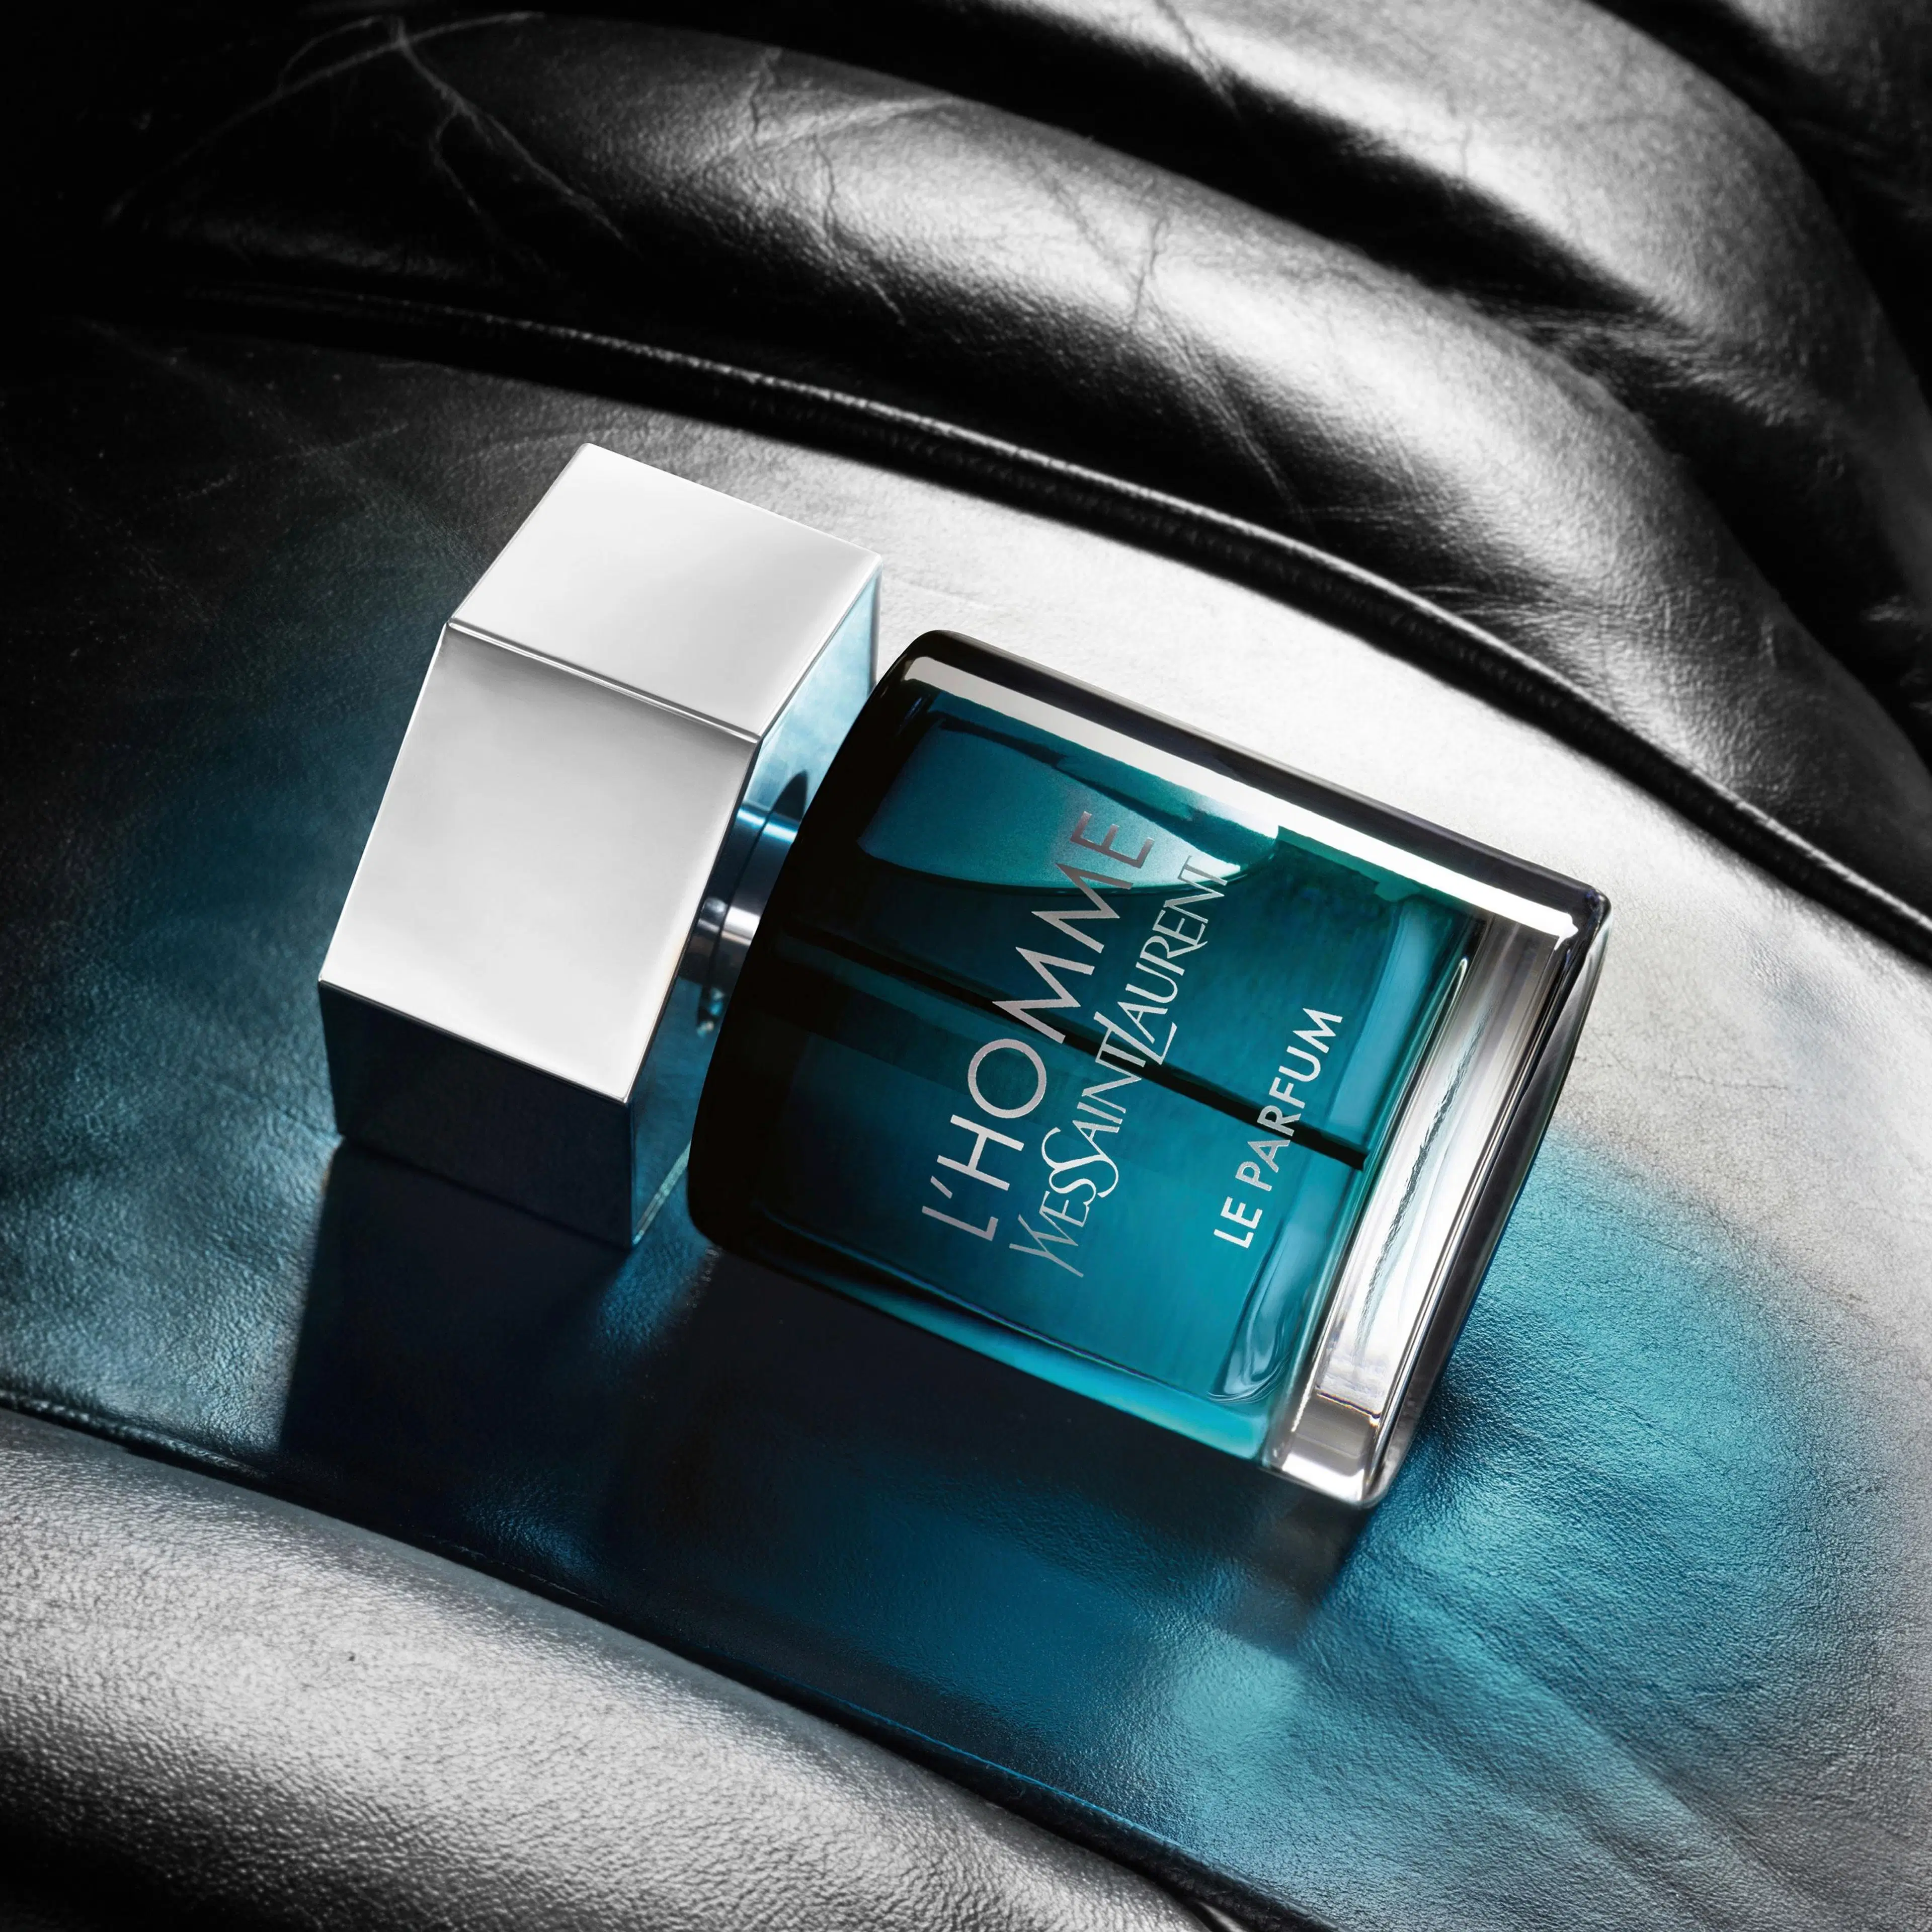 Yves Saint Laurent  L'Homme Le Parfum tuoksu 60 ml